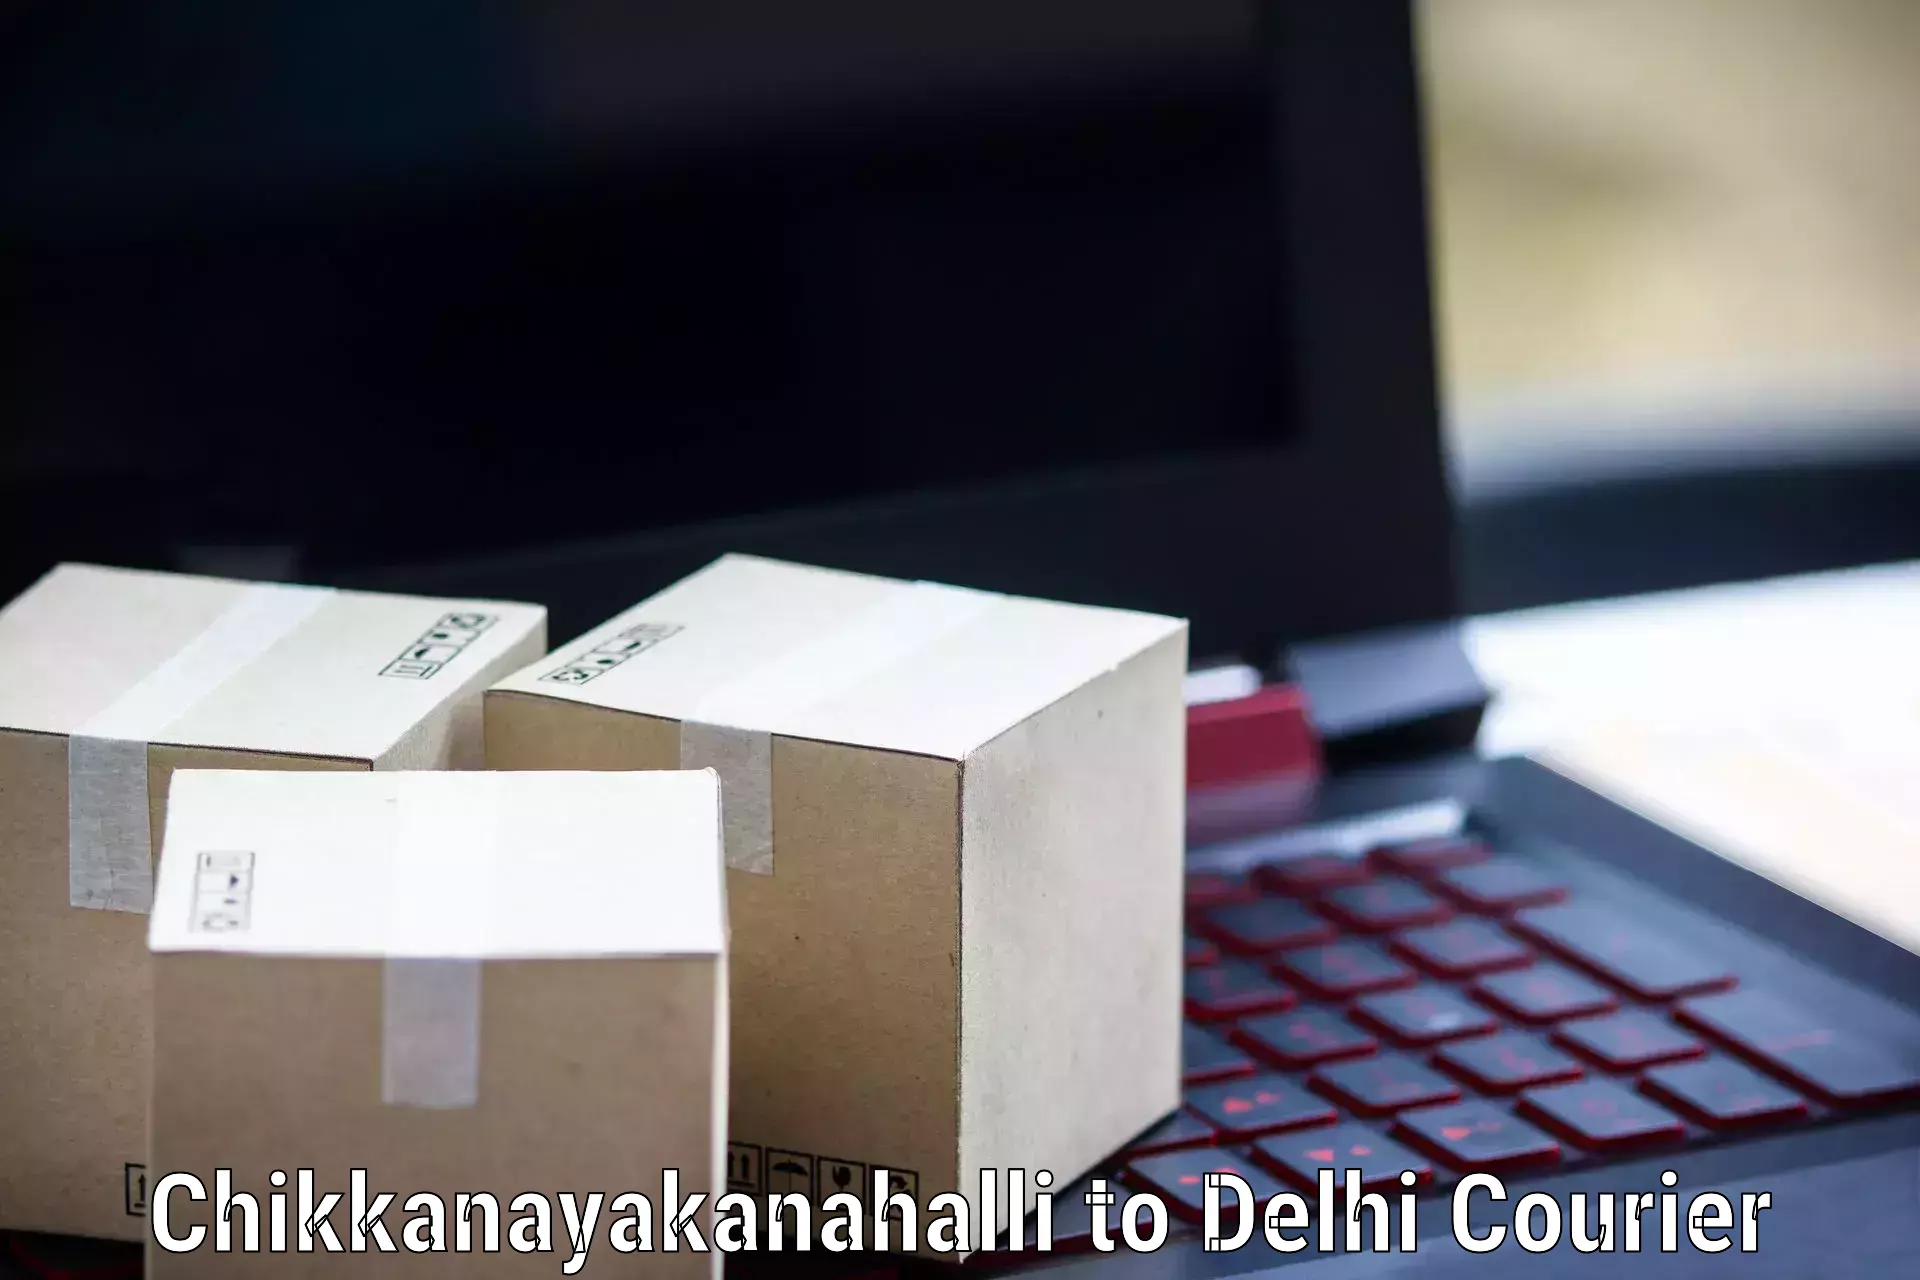 24/7 courier service Chikkanayakanahalli to Jawaharlal Nehru University New Delhi